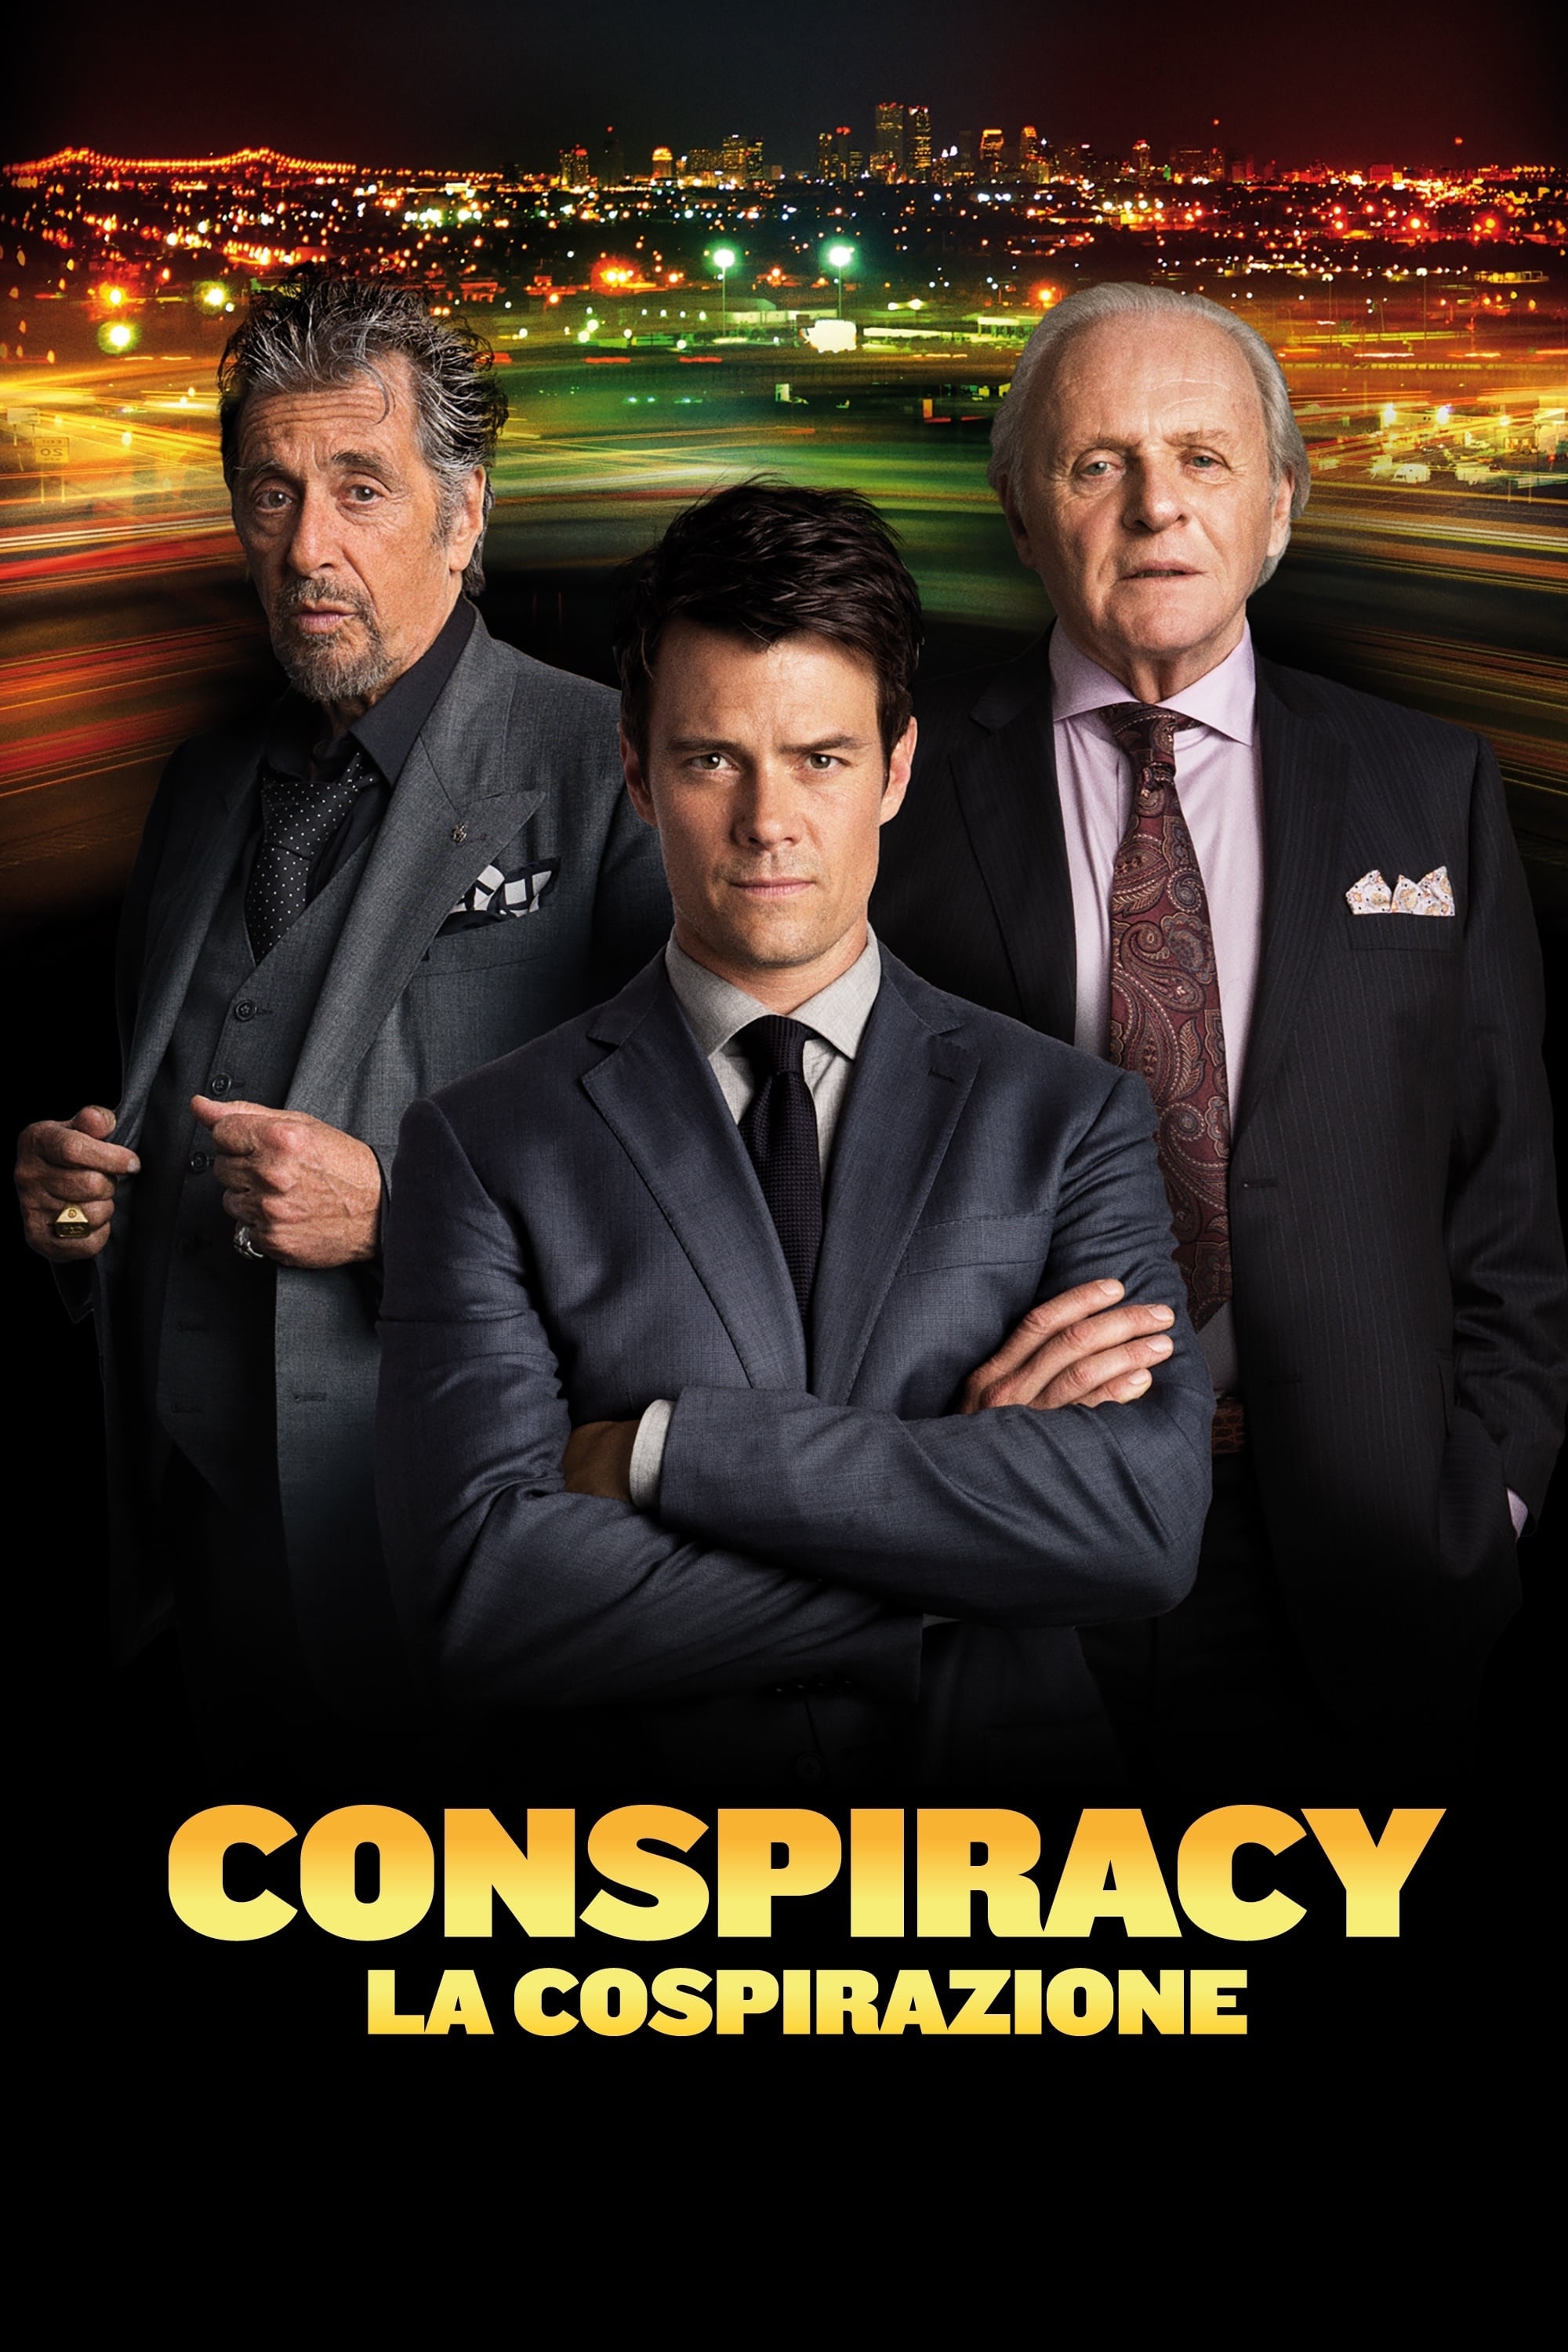 Conspiracy - La cospirazione film